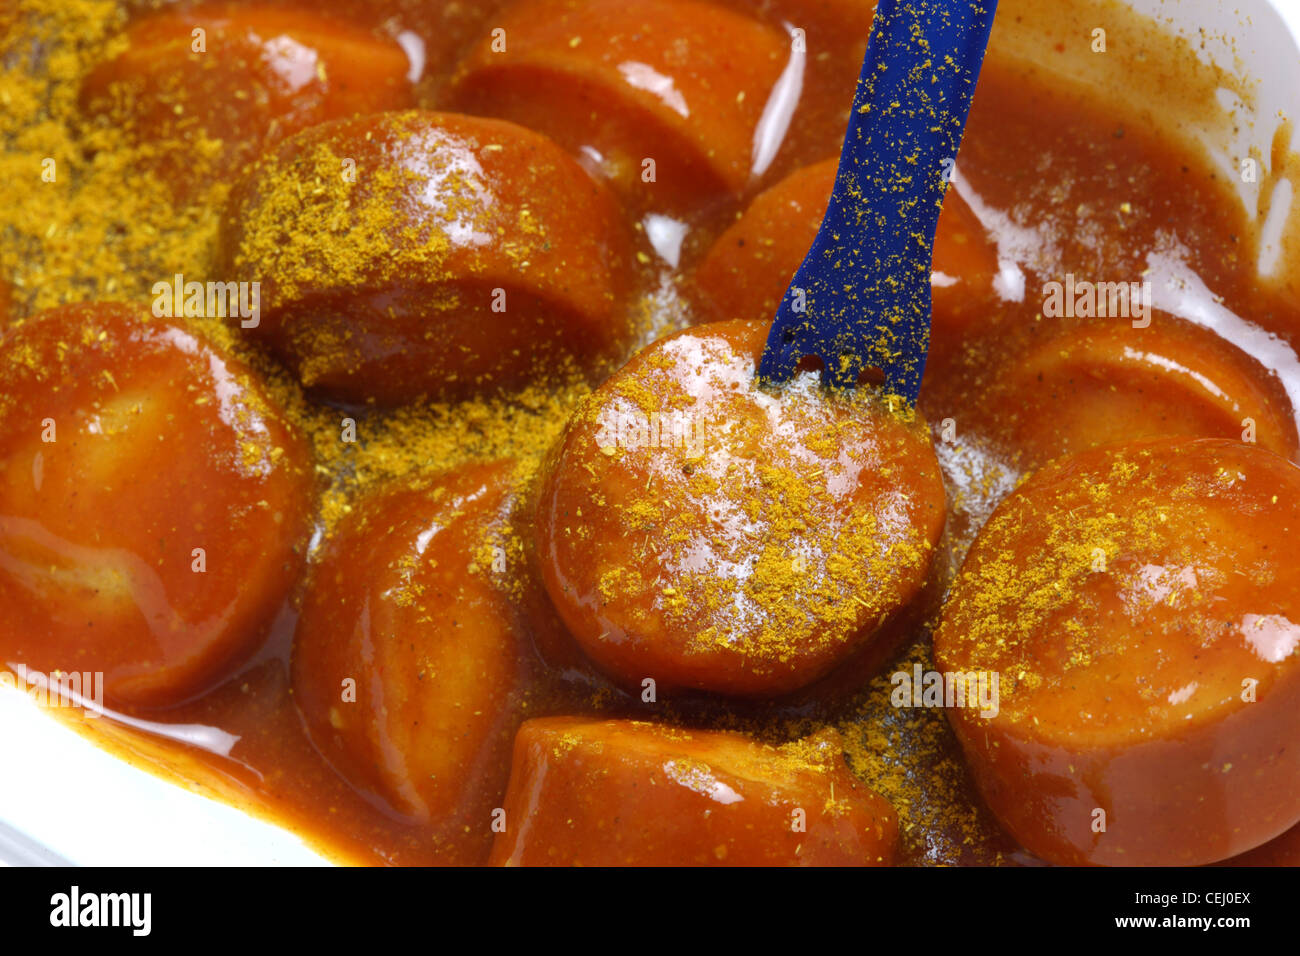 Ernährung, Fast-Food. Curry-Wurst, eine Bratwurst-Stil-Wurst mit pikantem Curry und Tomatensauce. Stockfoto